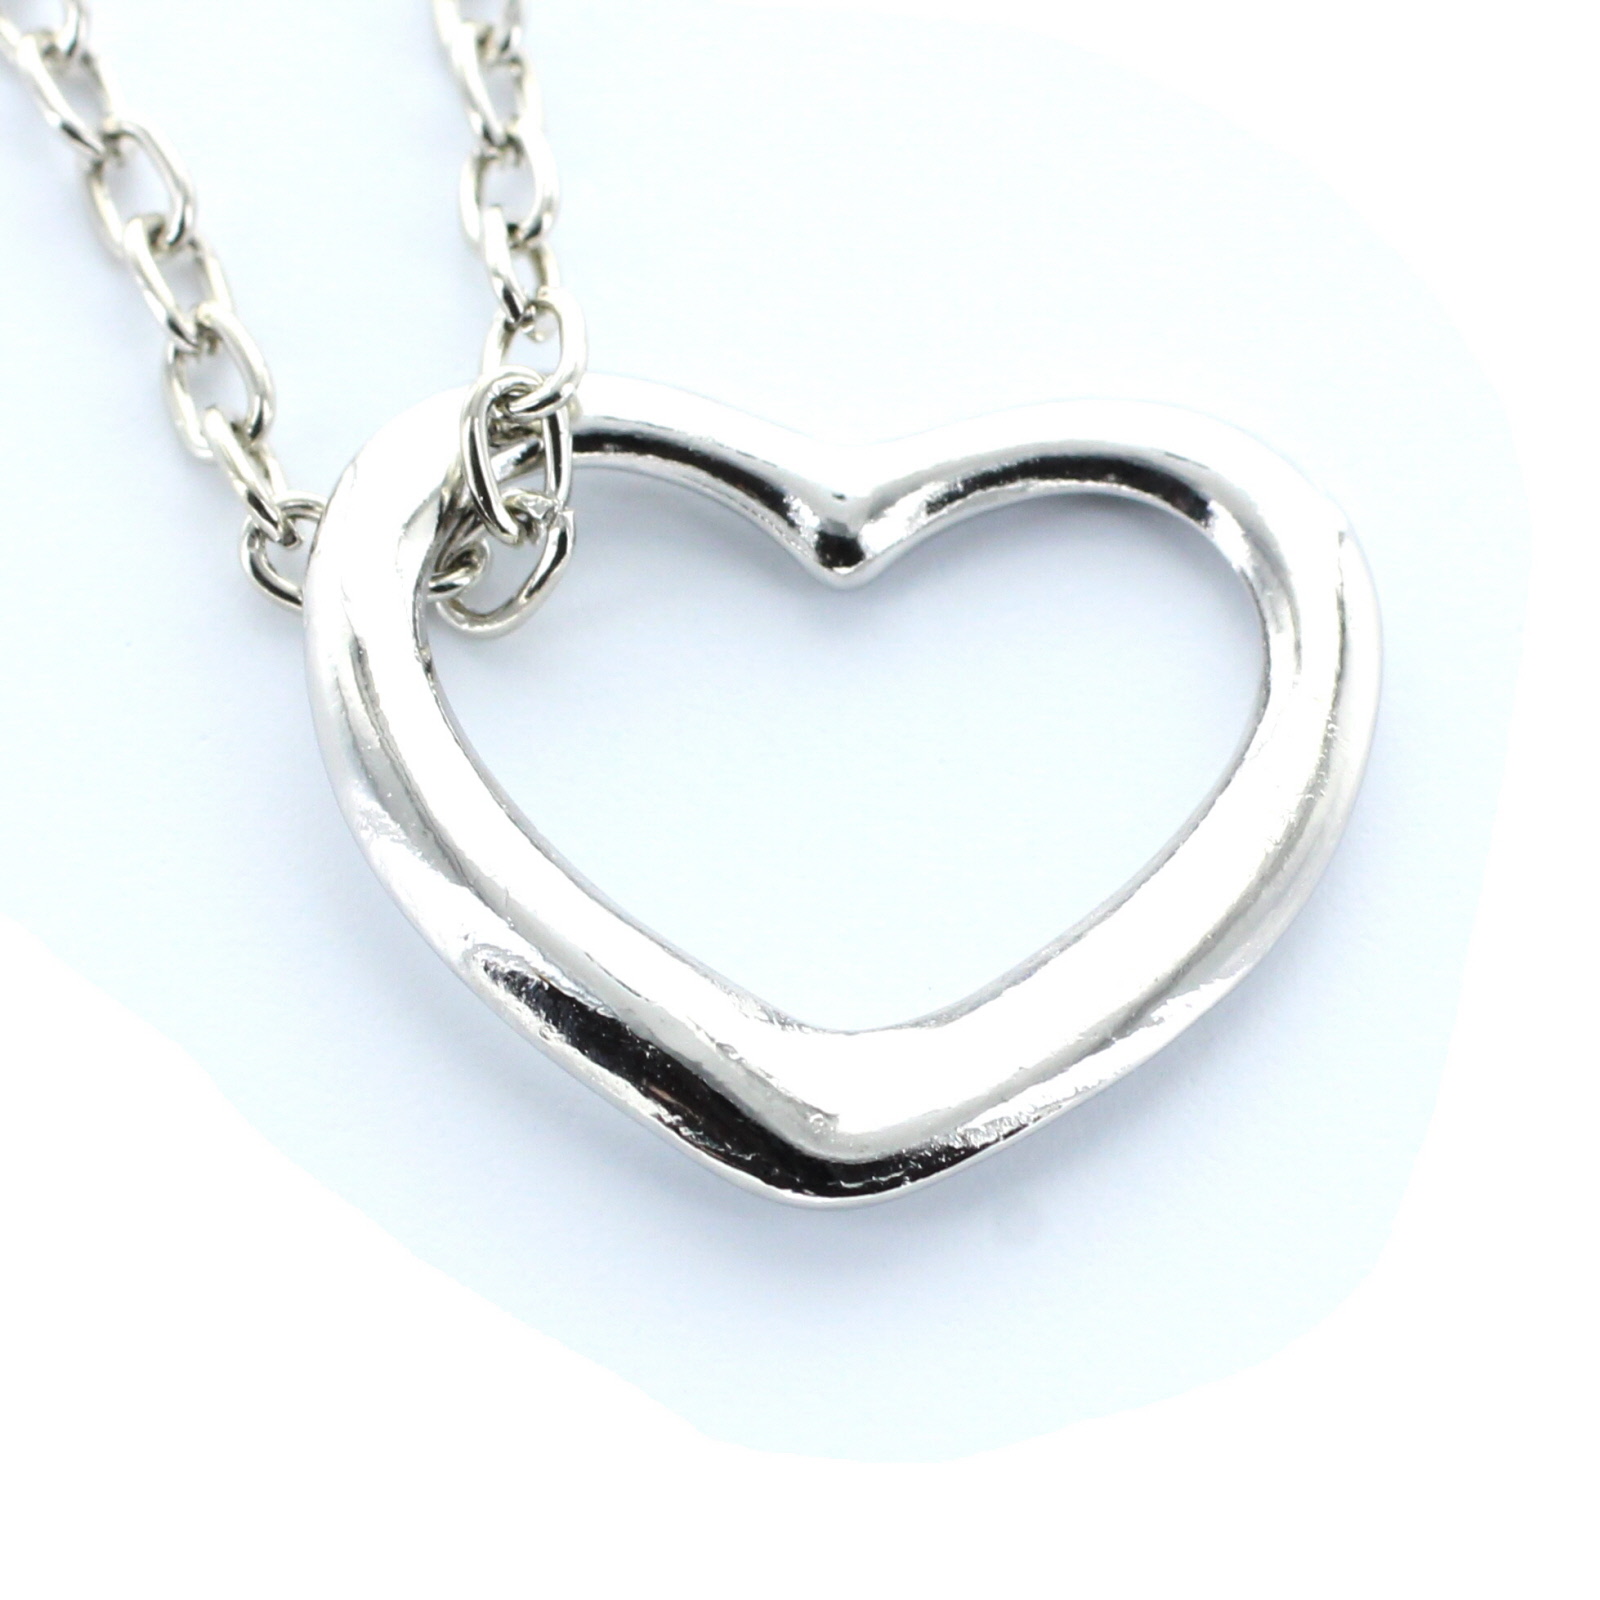 Halskette mit Herz Anhänger  - Onlineshop LieblingsMensch